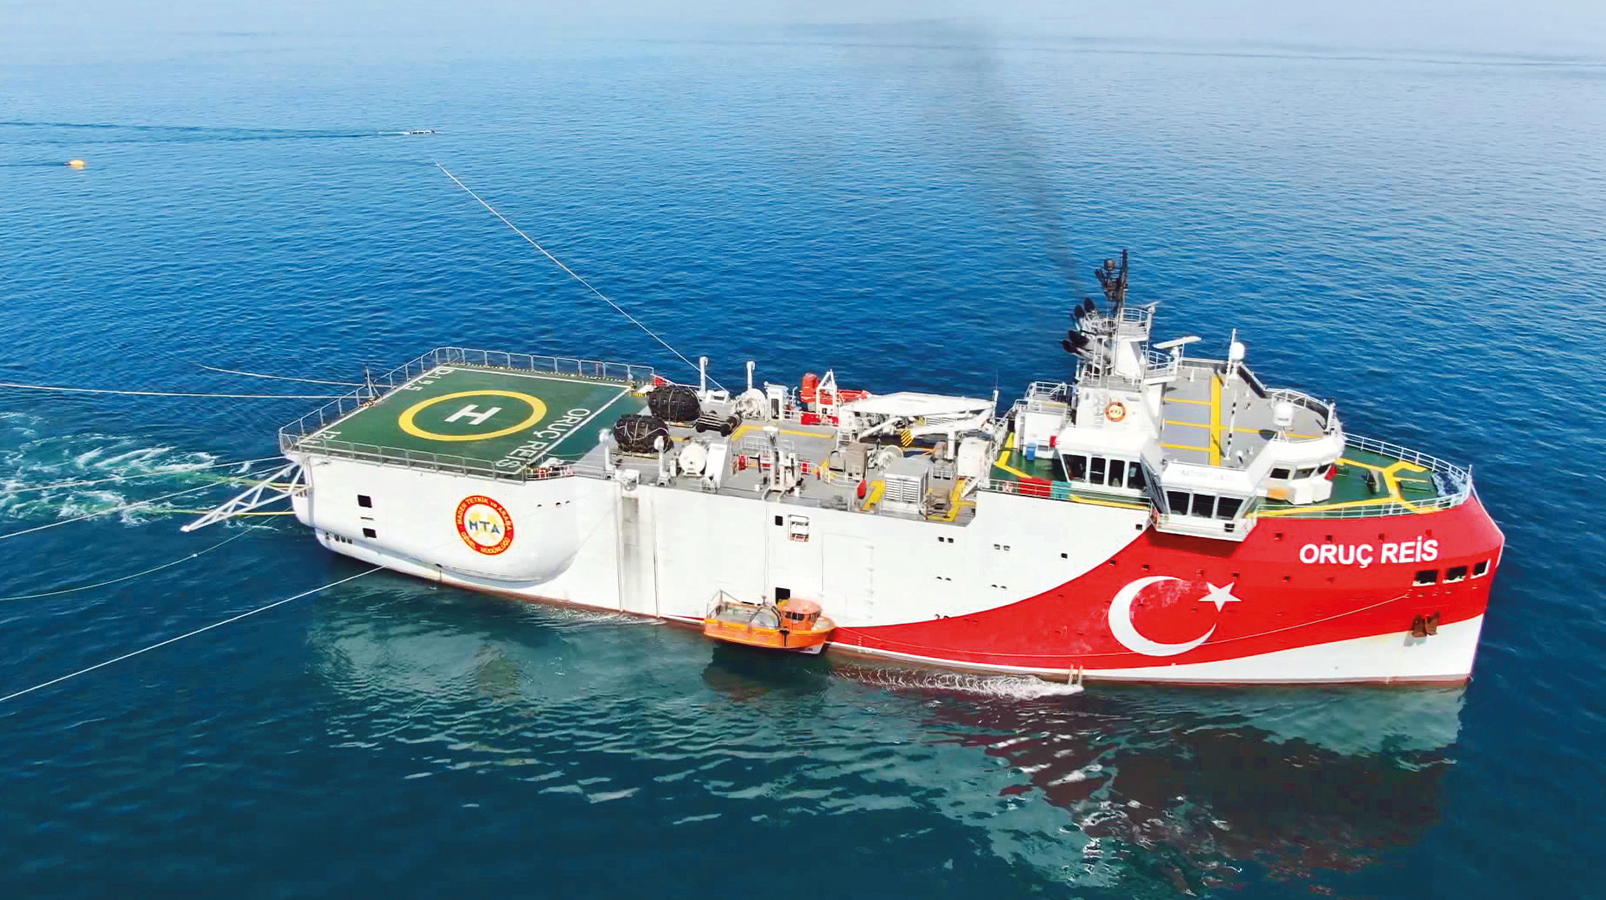 Η Άγκυρα ετοιμάζει μείζονα κρίση: Στέλνει πολεμικά πλοία & υποβρύχια μαζί με το Oruc Reis στην κυπριακή ΑΟΖ